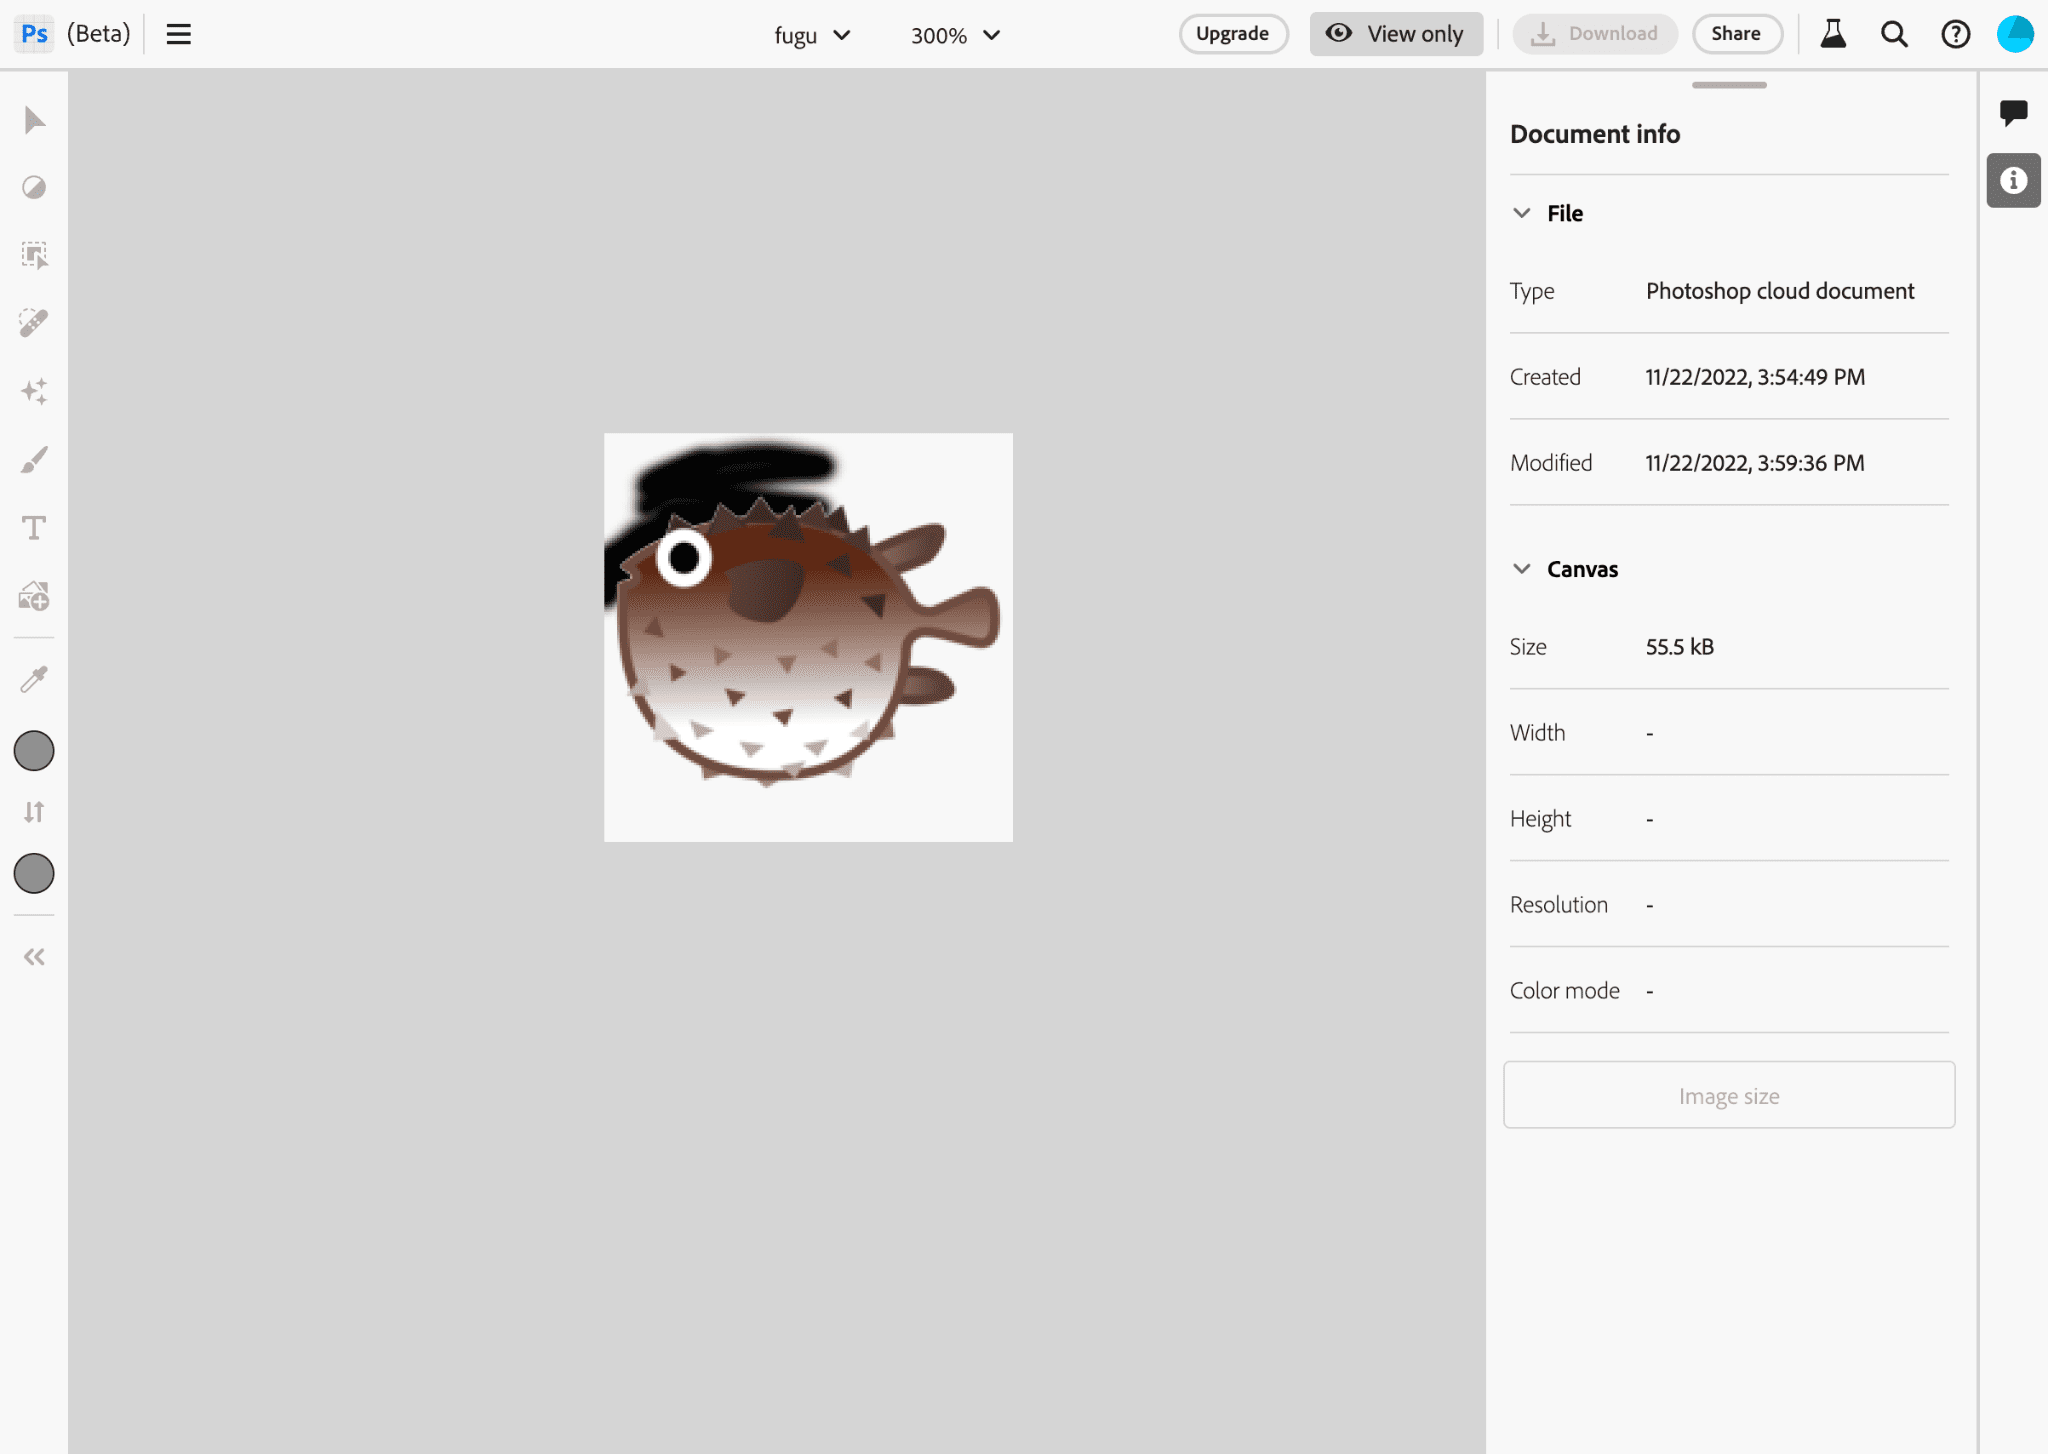 Photoshop ऐप्लिकेशन की इमेज, जिसमें Project Fugu ऐप्लिकेशन की इमेज में बदलाव करते हुए दिखाया गया है.